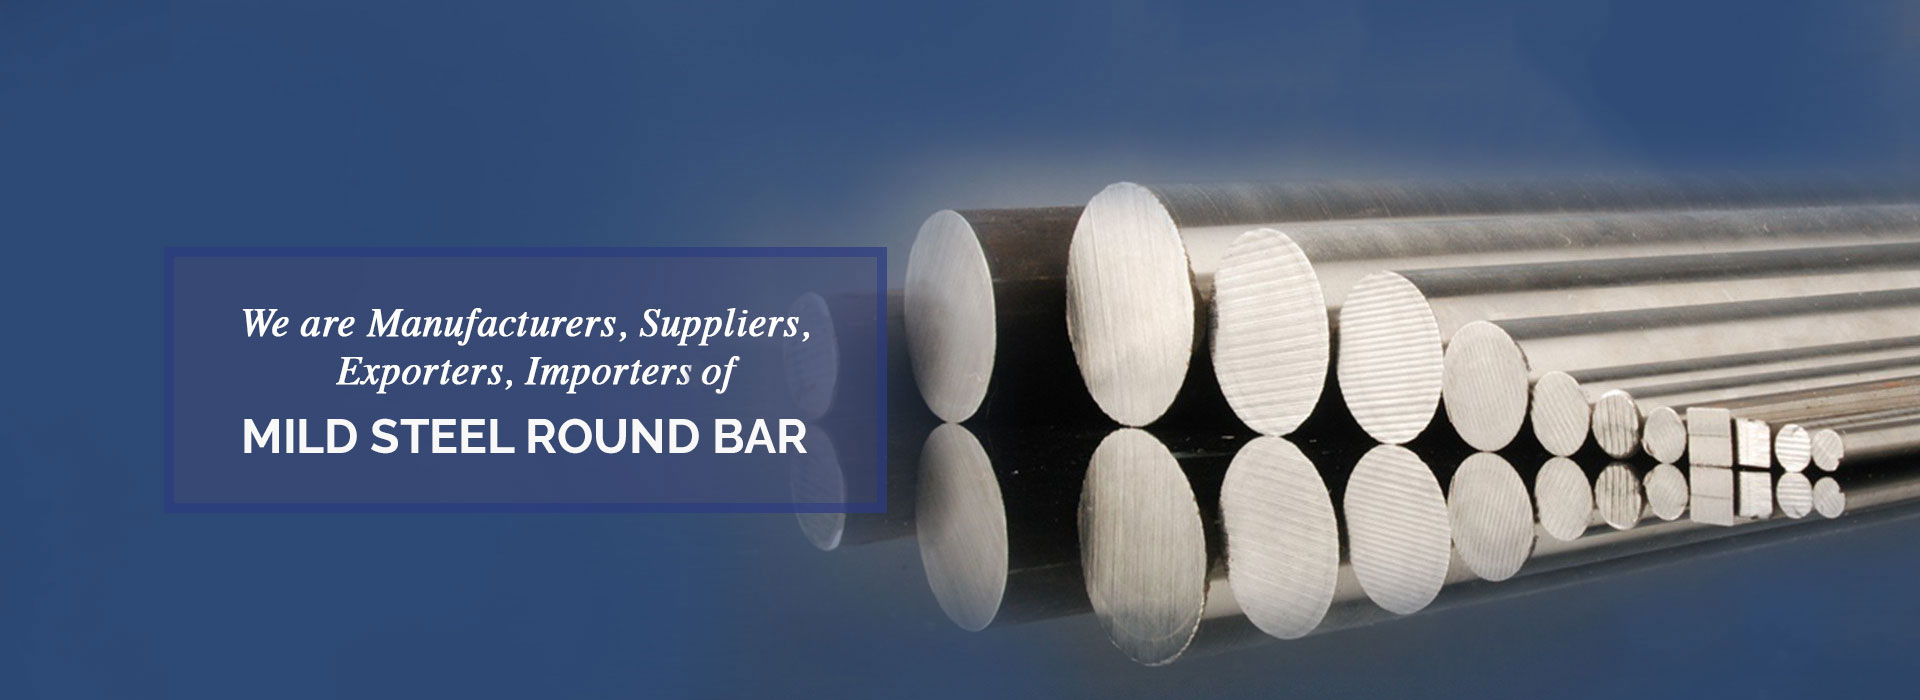 Mild Steel Round Bar Manufacturers in Nigeria